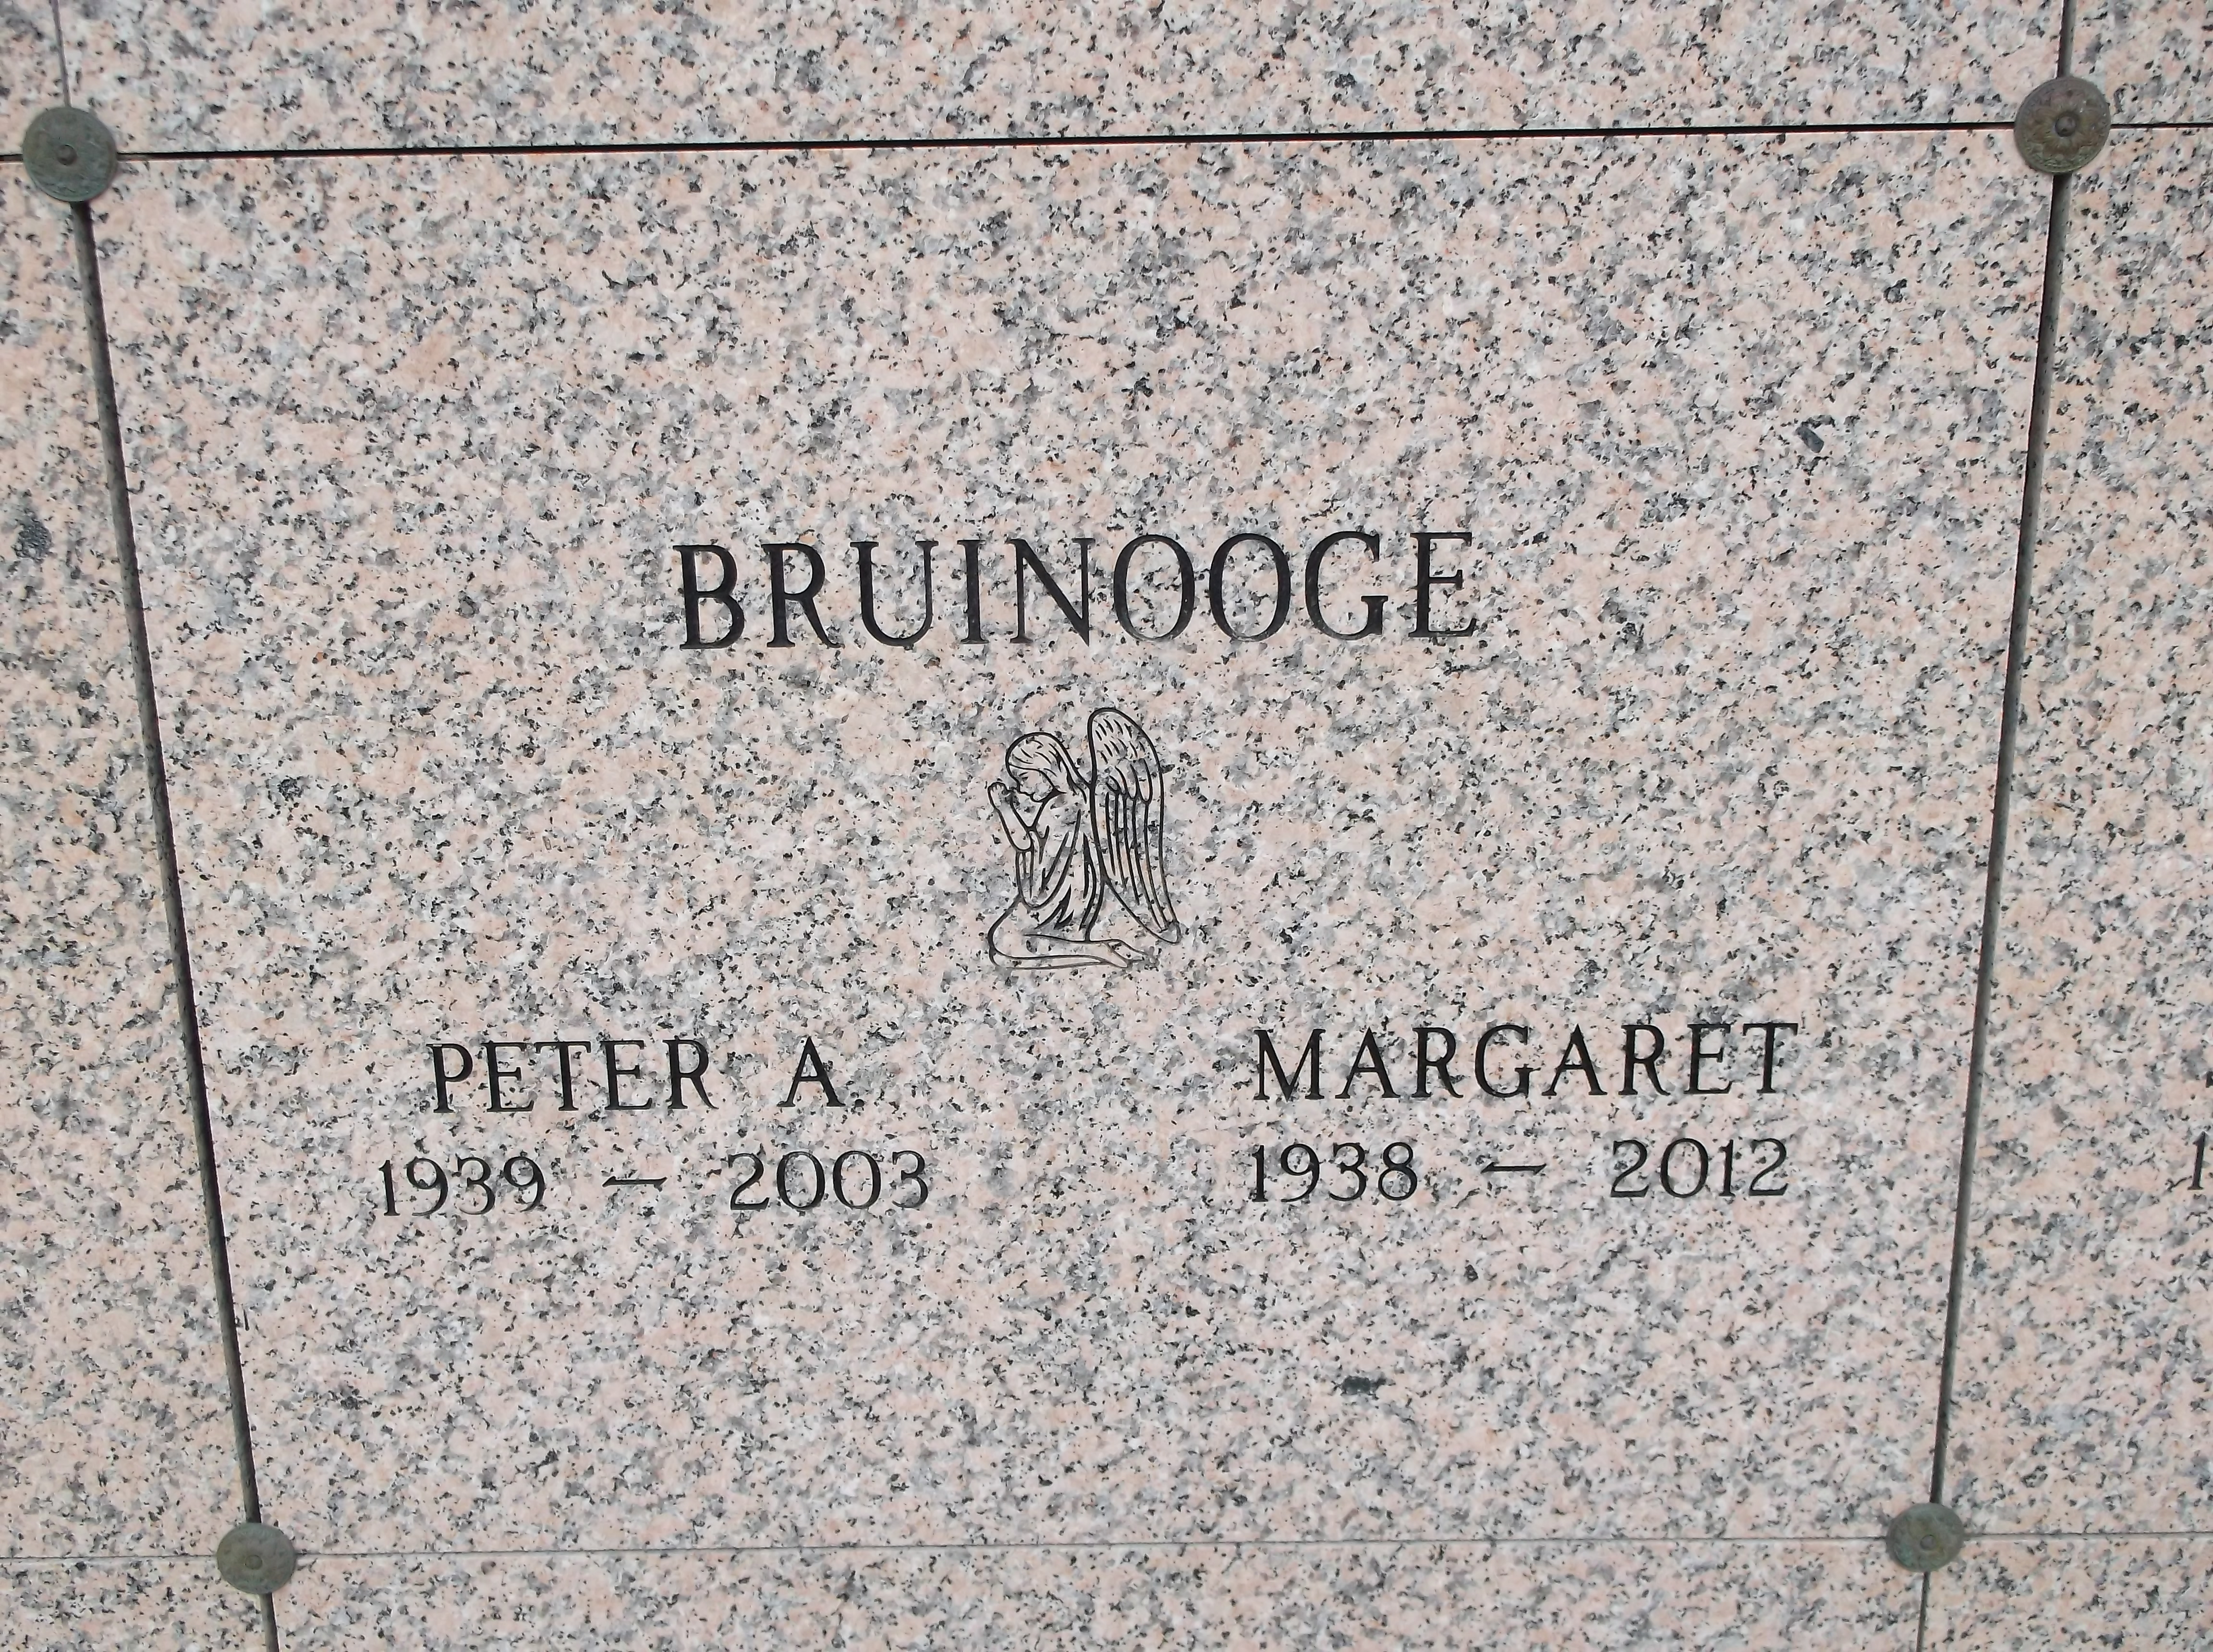 Margaret Bruinooge